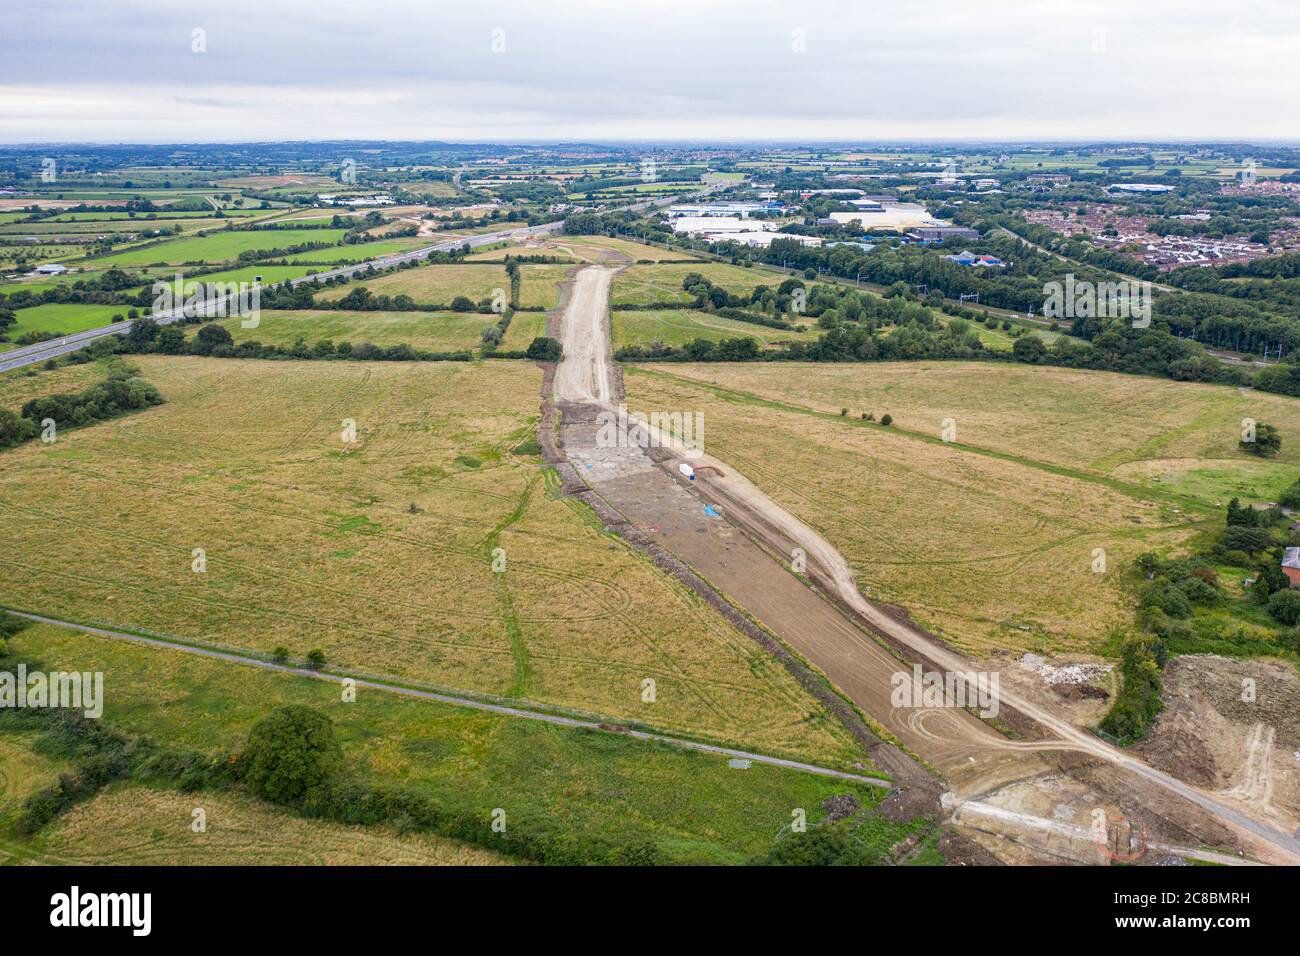 Vue panoramique aérienne de la nouvelle route d'accès sud de Wichelstowe (WSA), interprétation à Swindon, Wiltshire Banque D'Images